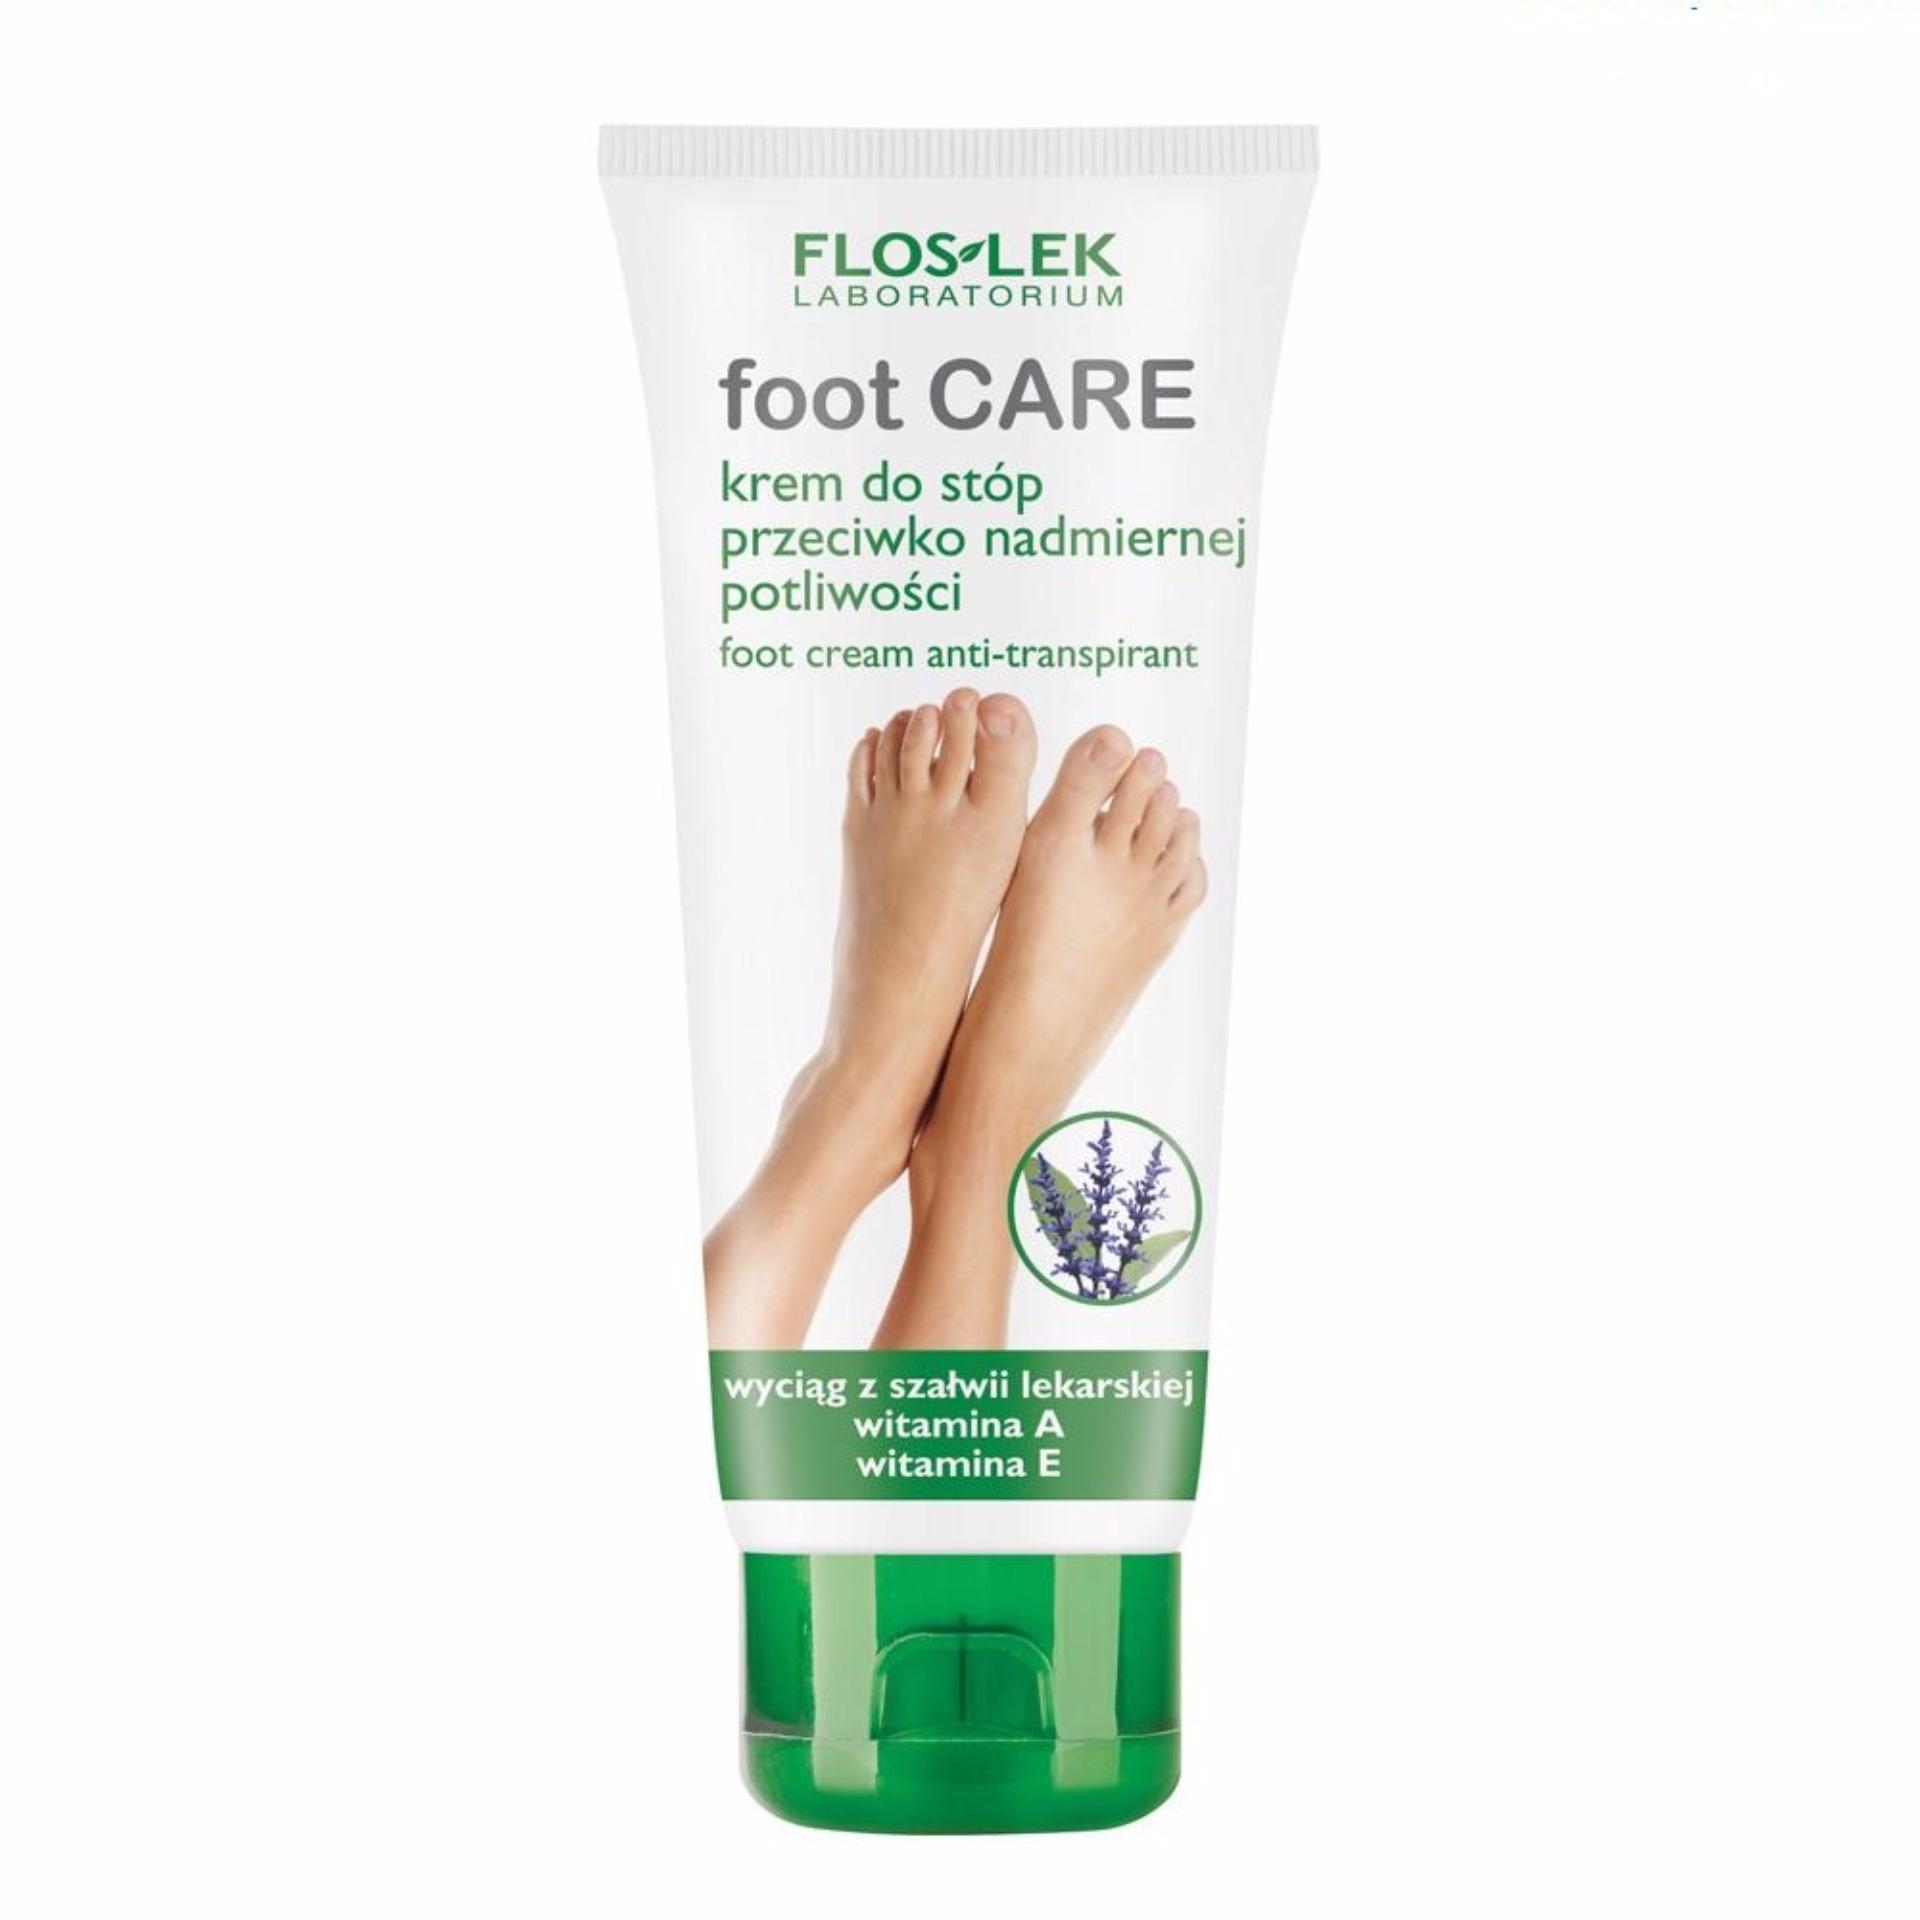 Kem diệt khuẩn, chống mùi hôi và dưỡng da chân - Anti-perspirant foot cream 100ml